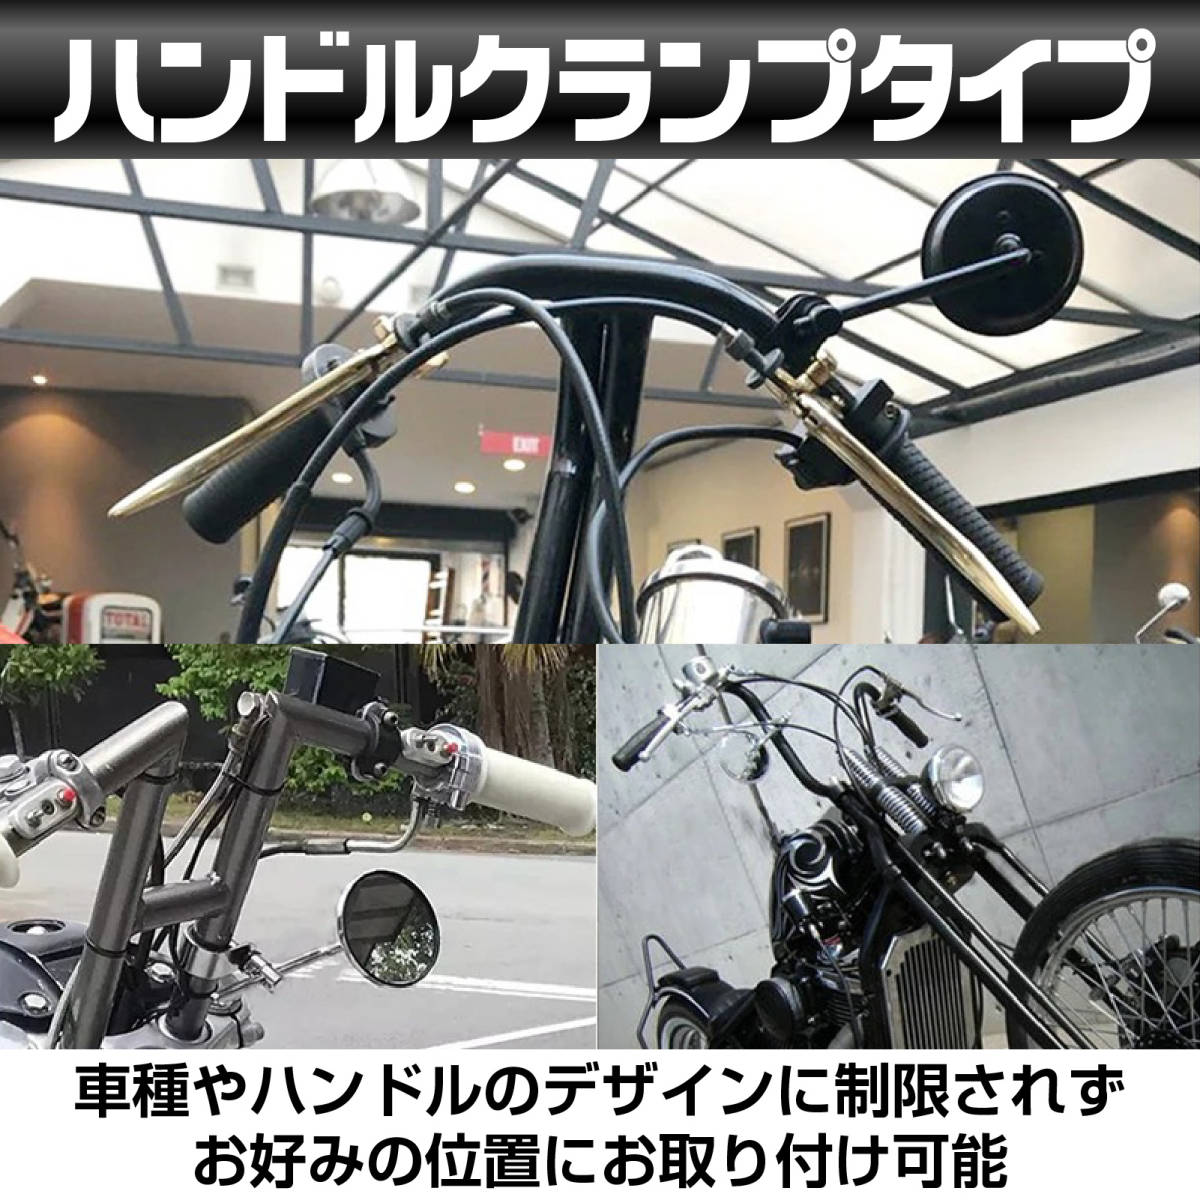 【ブラック】 クランプミラー バイク ミラー ハンドルクランプ ラウンドミラー ハーレー チョッパー ボバー 汎用 左右セットの画像3